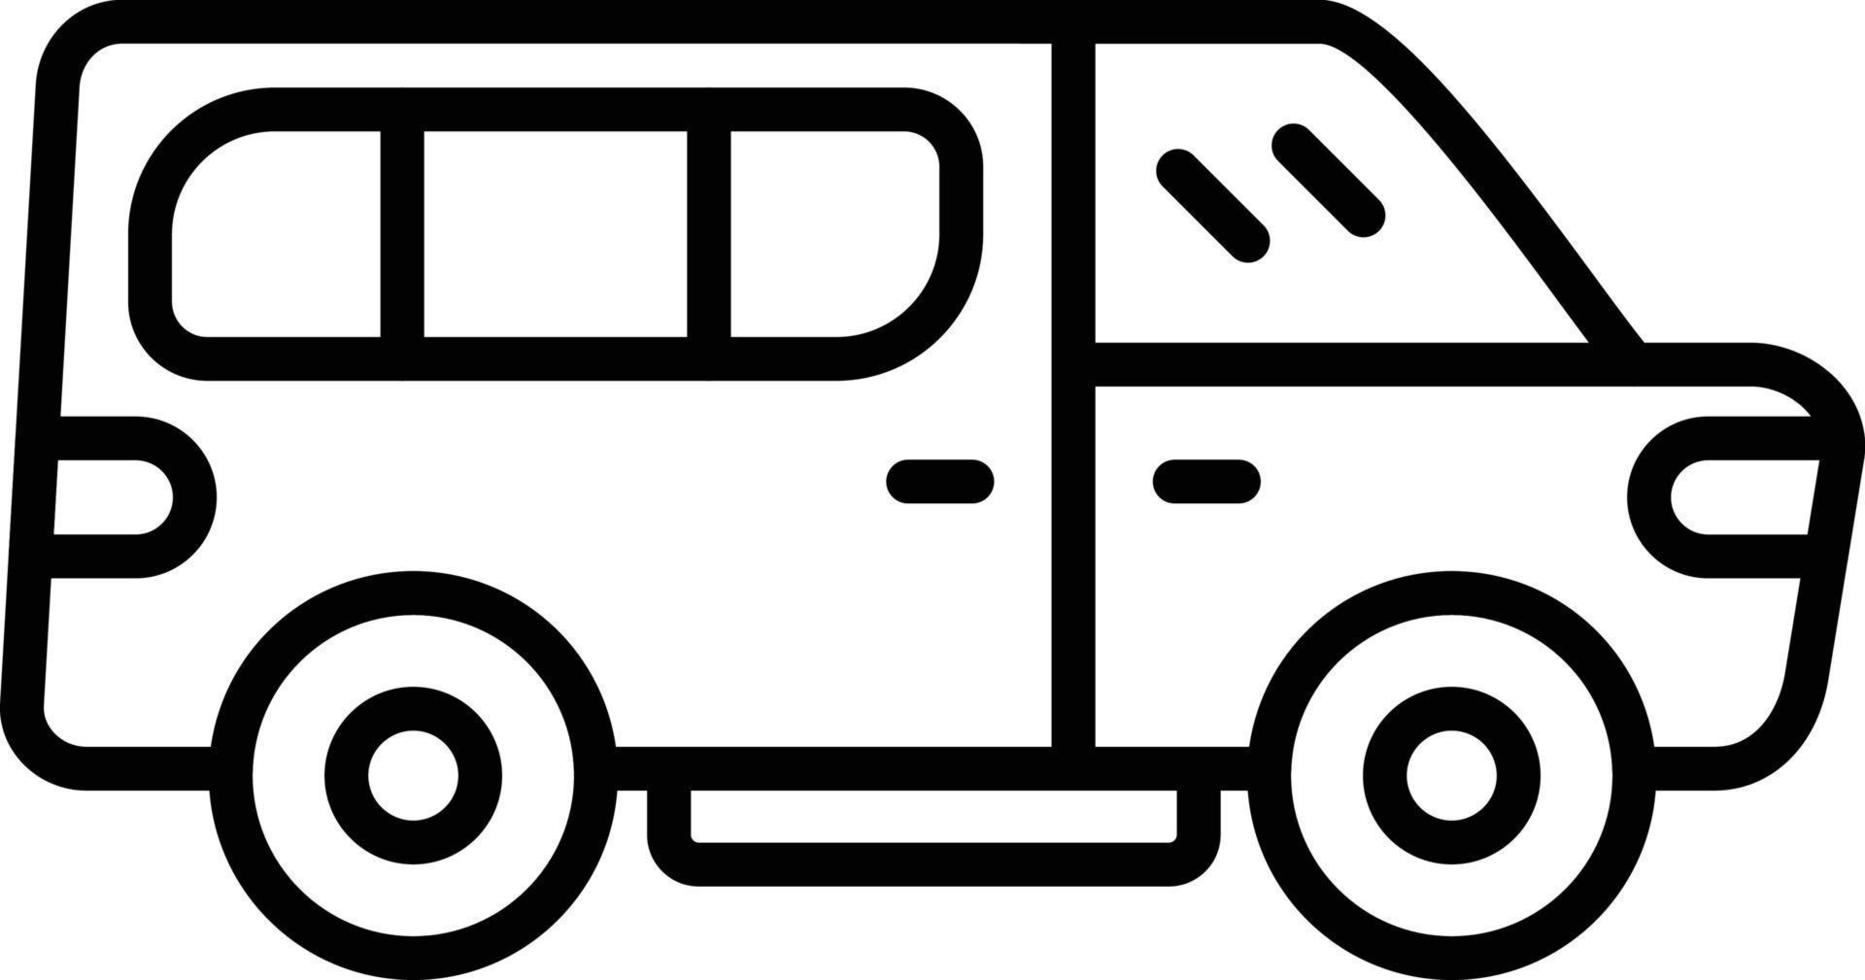 minivan creativo icona design vettore